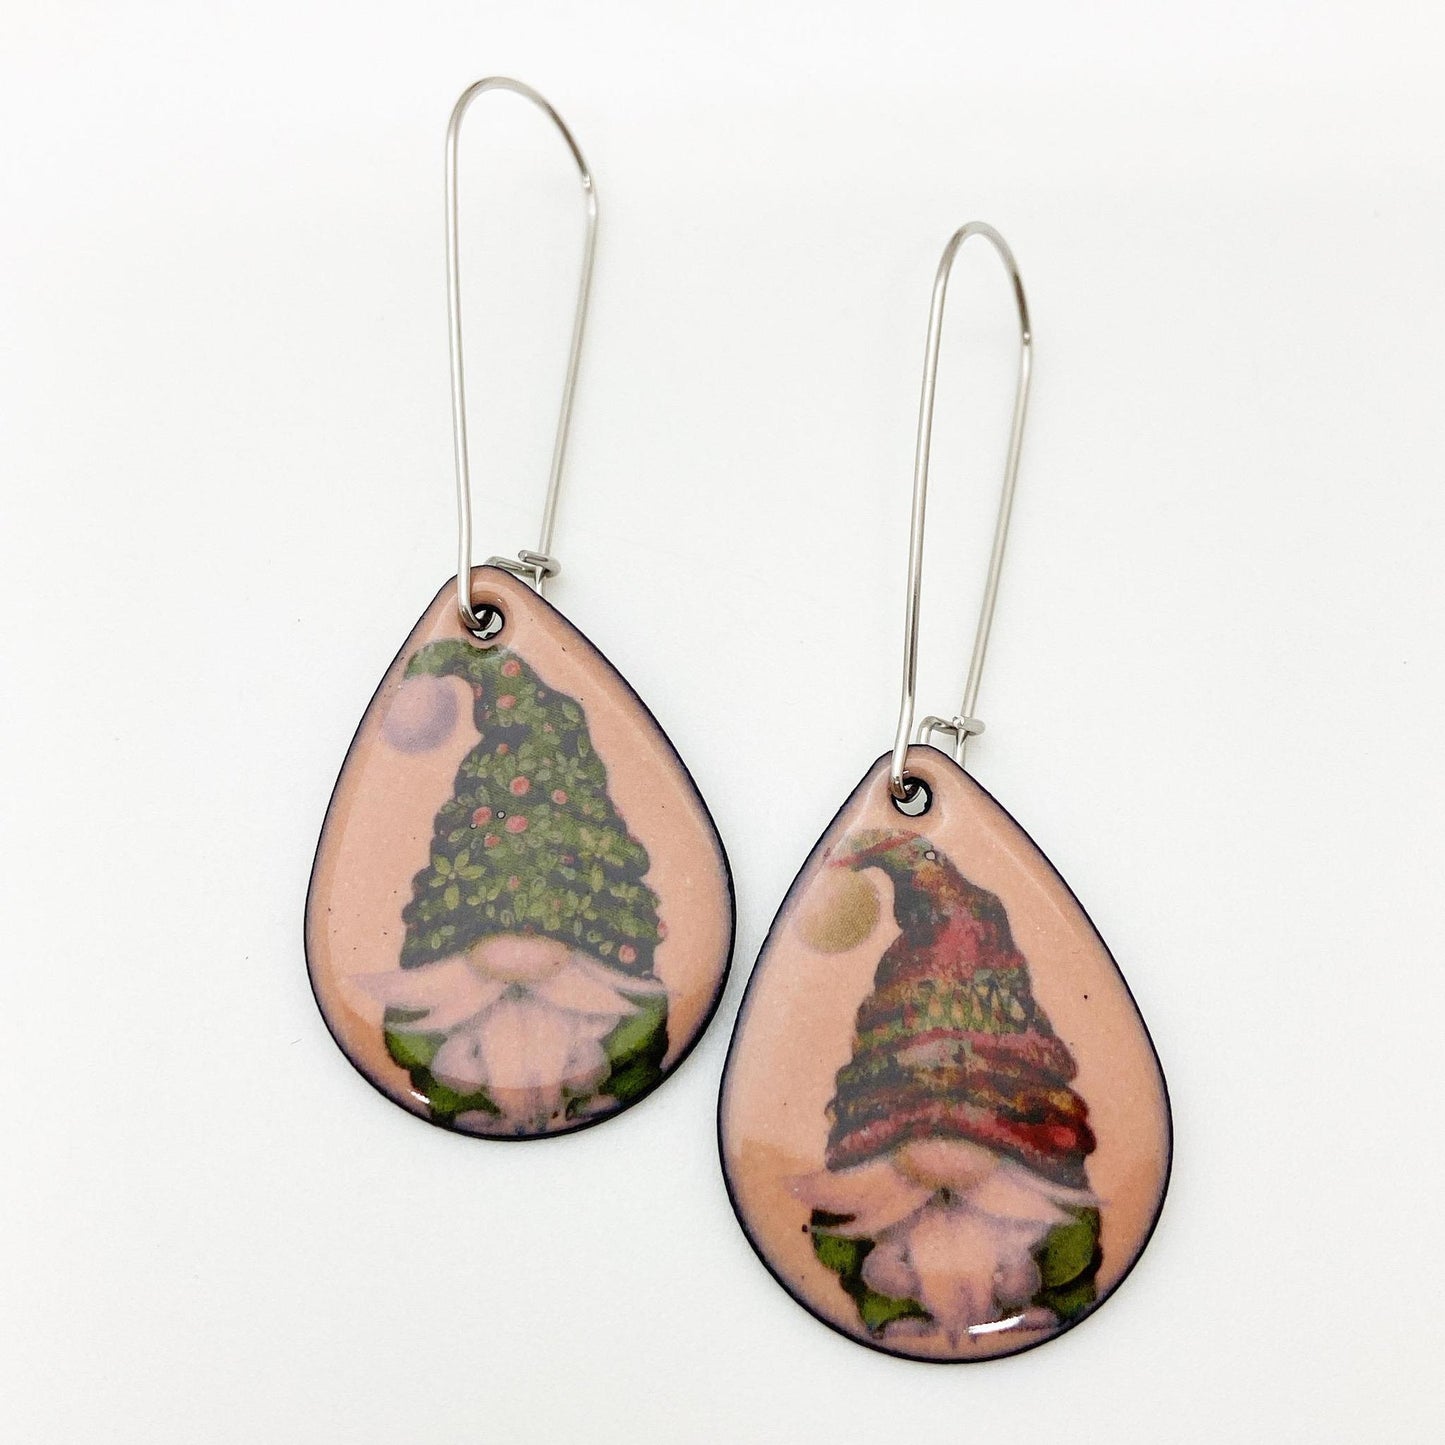 Earrings - Gnomes on Pink Teardrops - Enamel on Copper